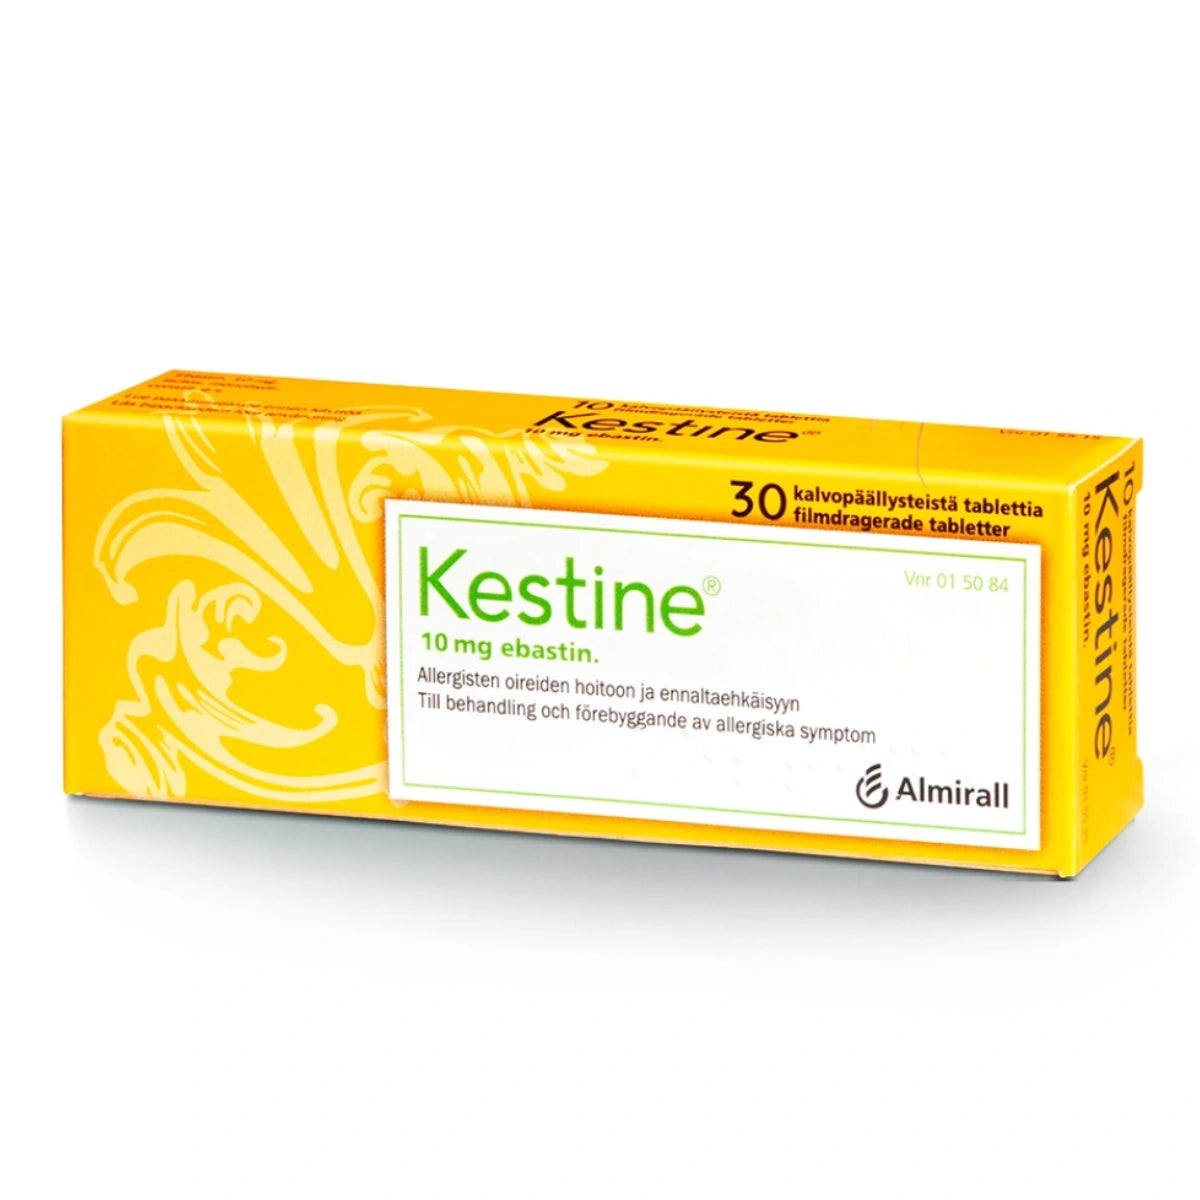 KESTINE 10 mg tabletti, kalvopäällysteinen 30 kpl